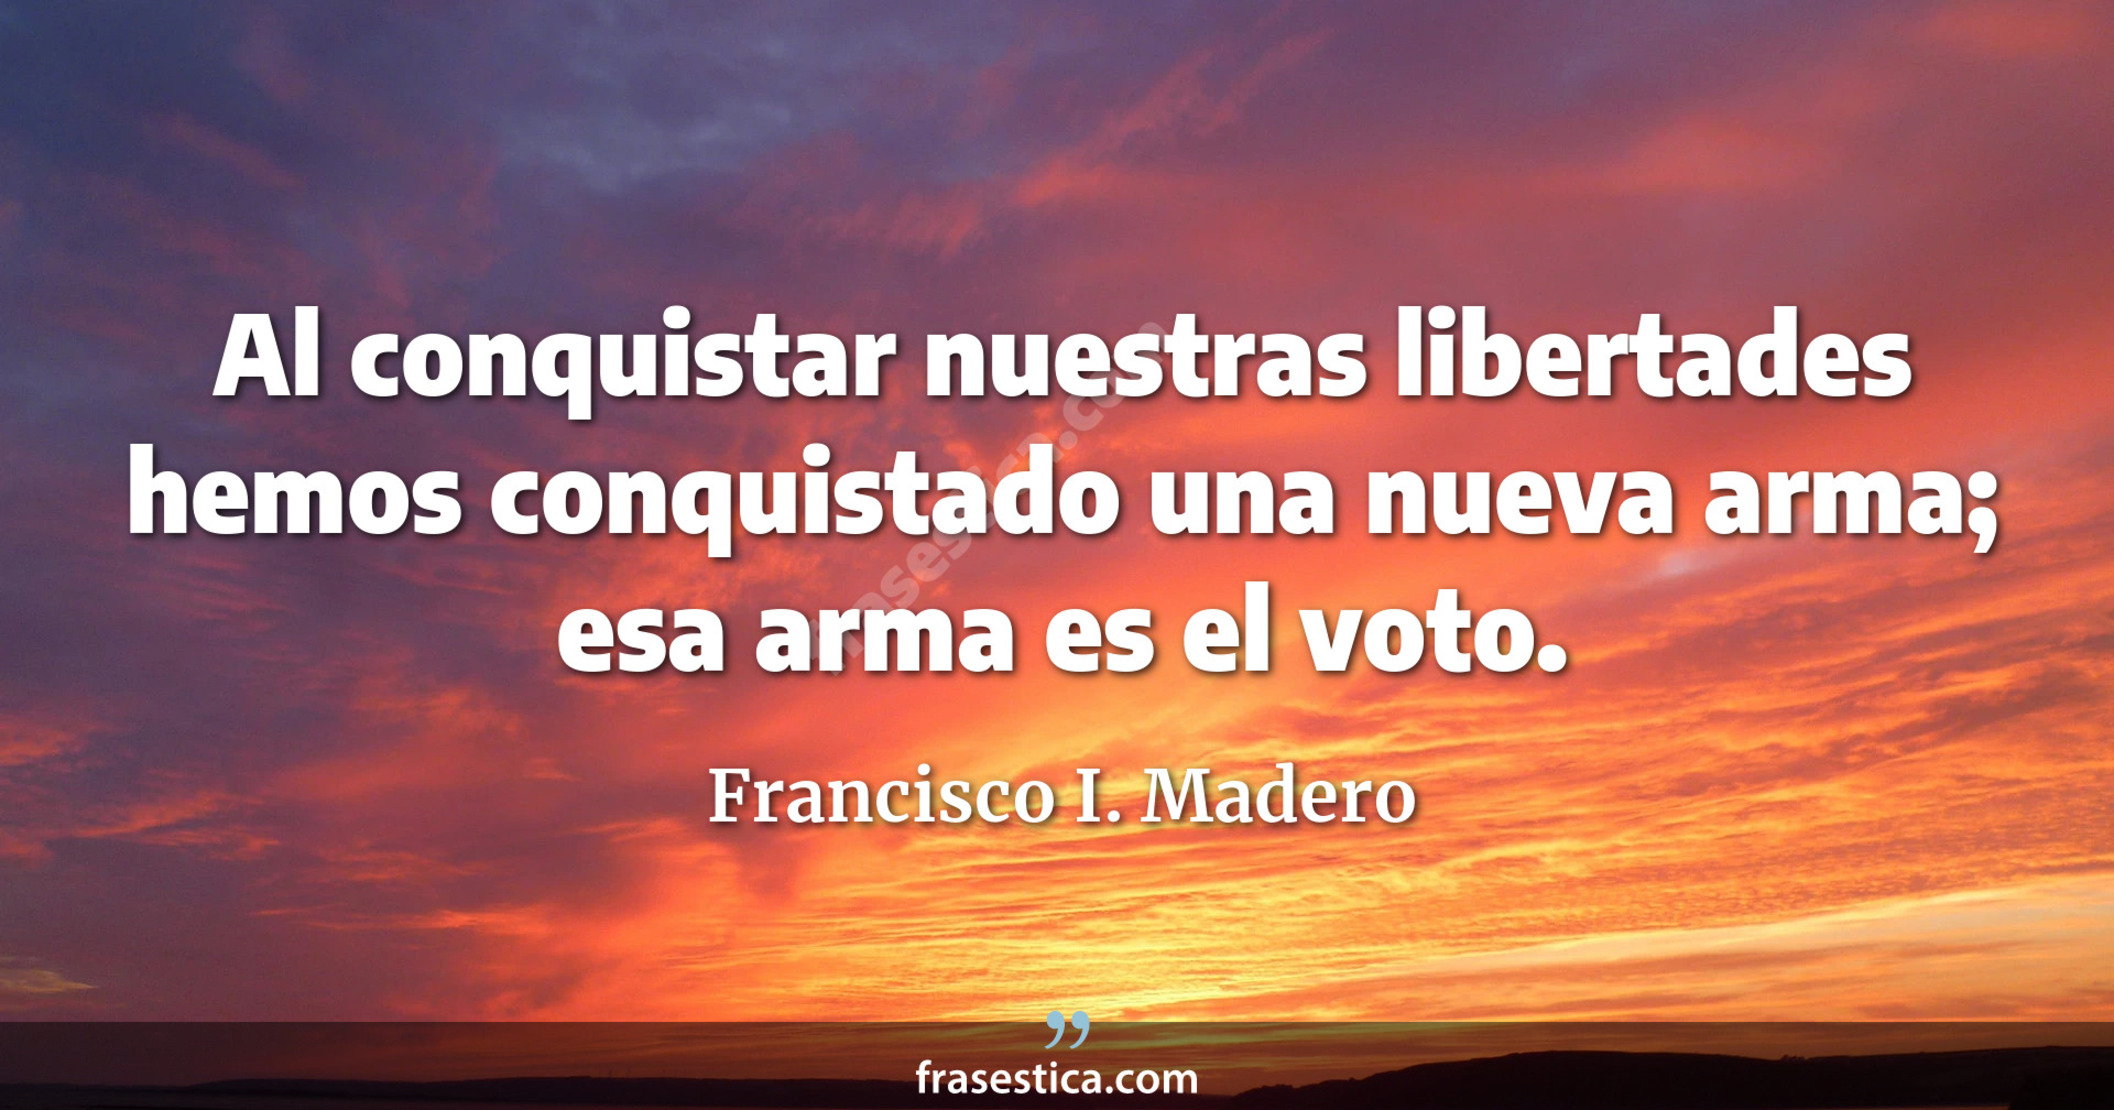 Al conquistar nuestras libertades hemos conquistado una nueva arma; esa arma es el voto. - Francisco I. Madero